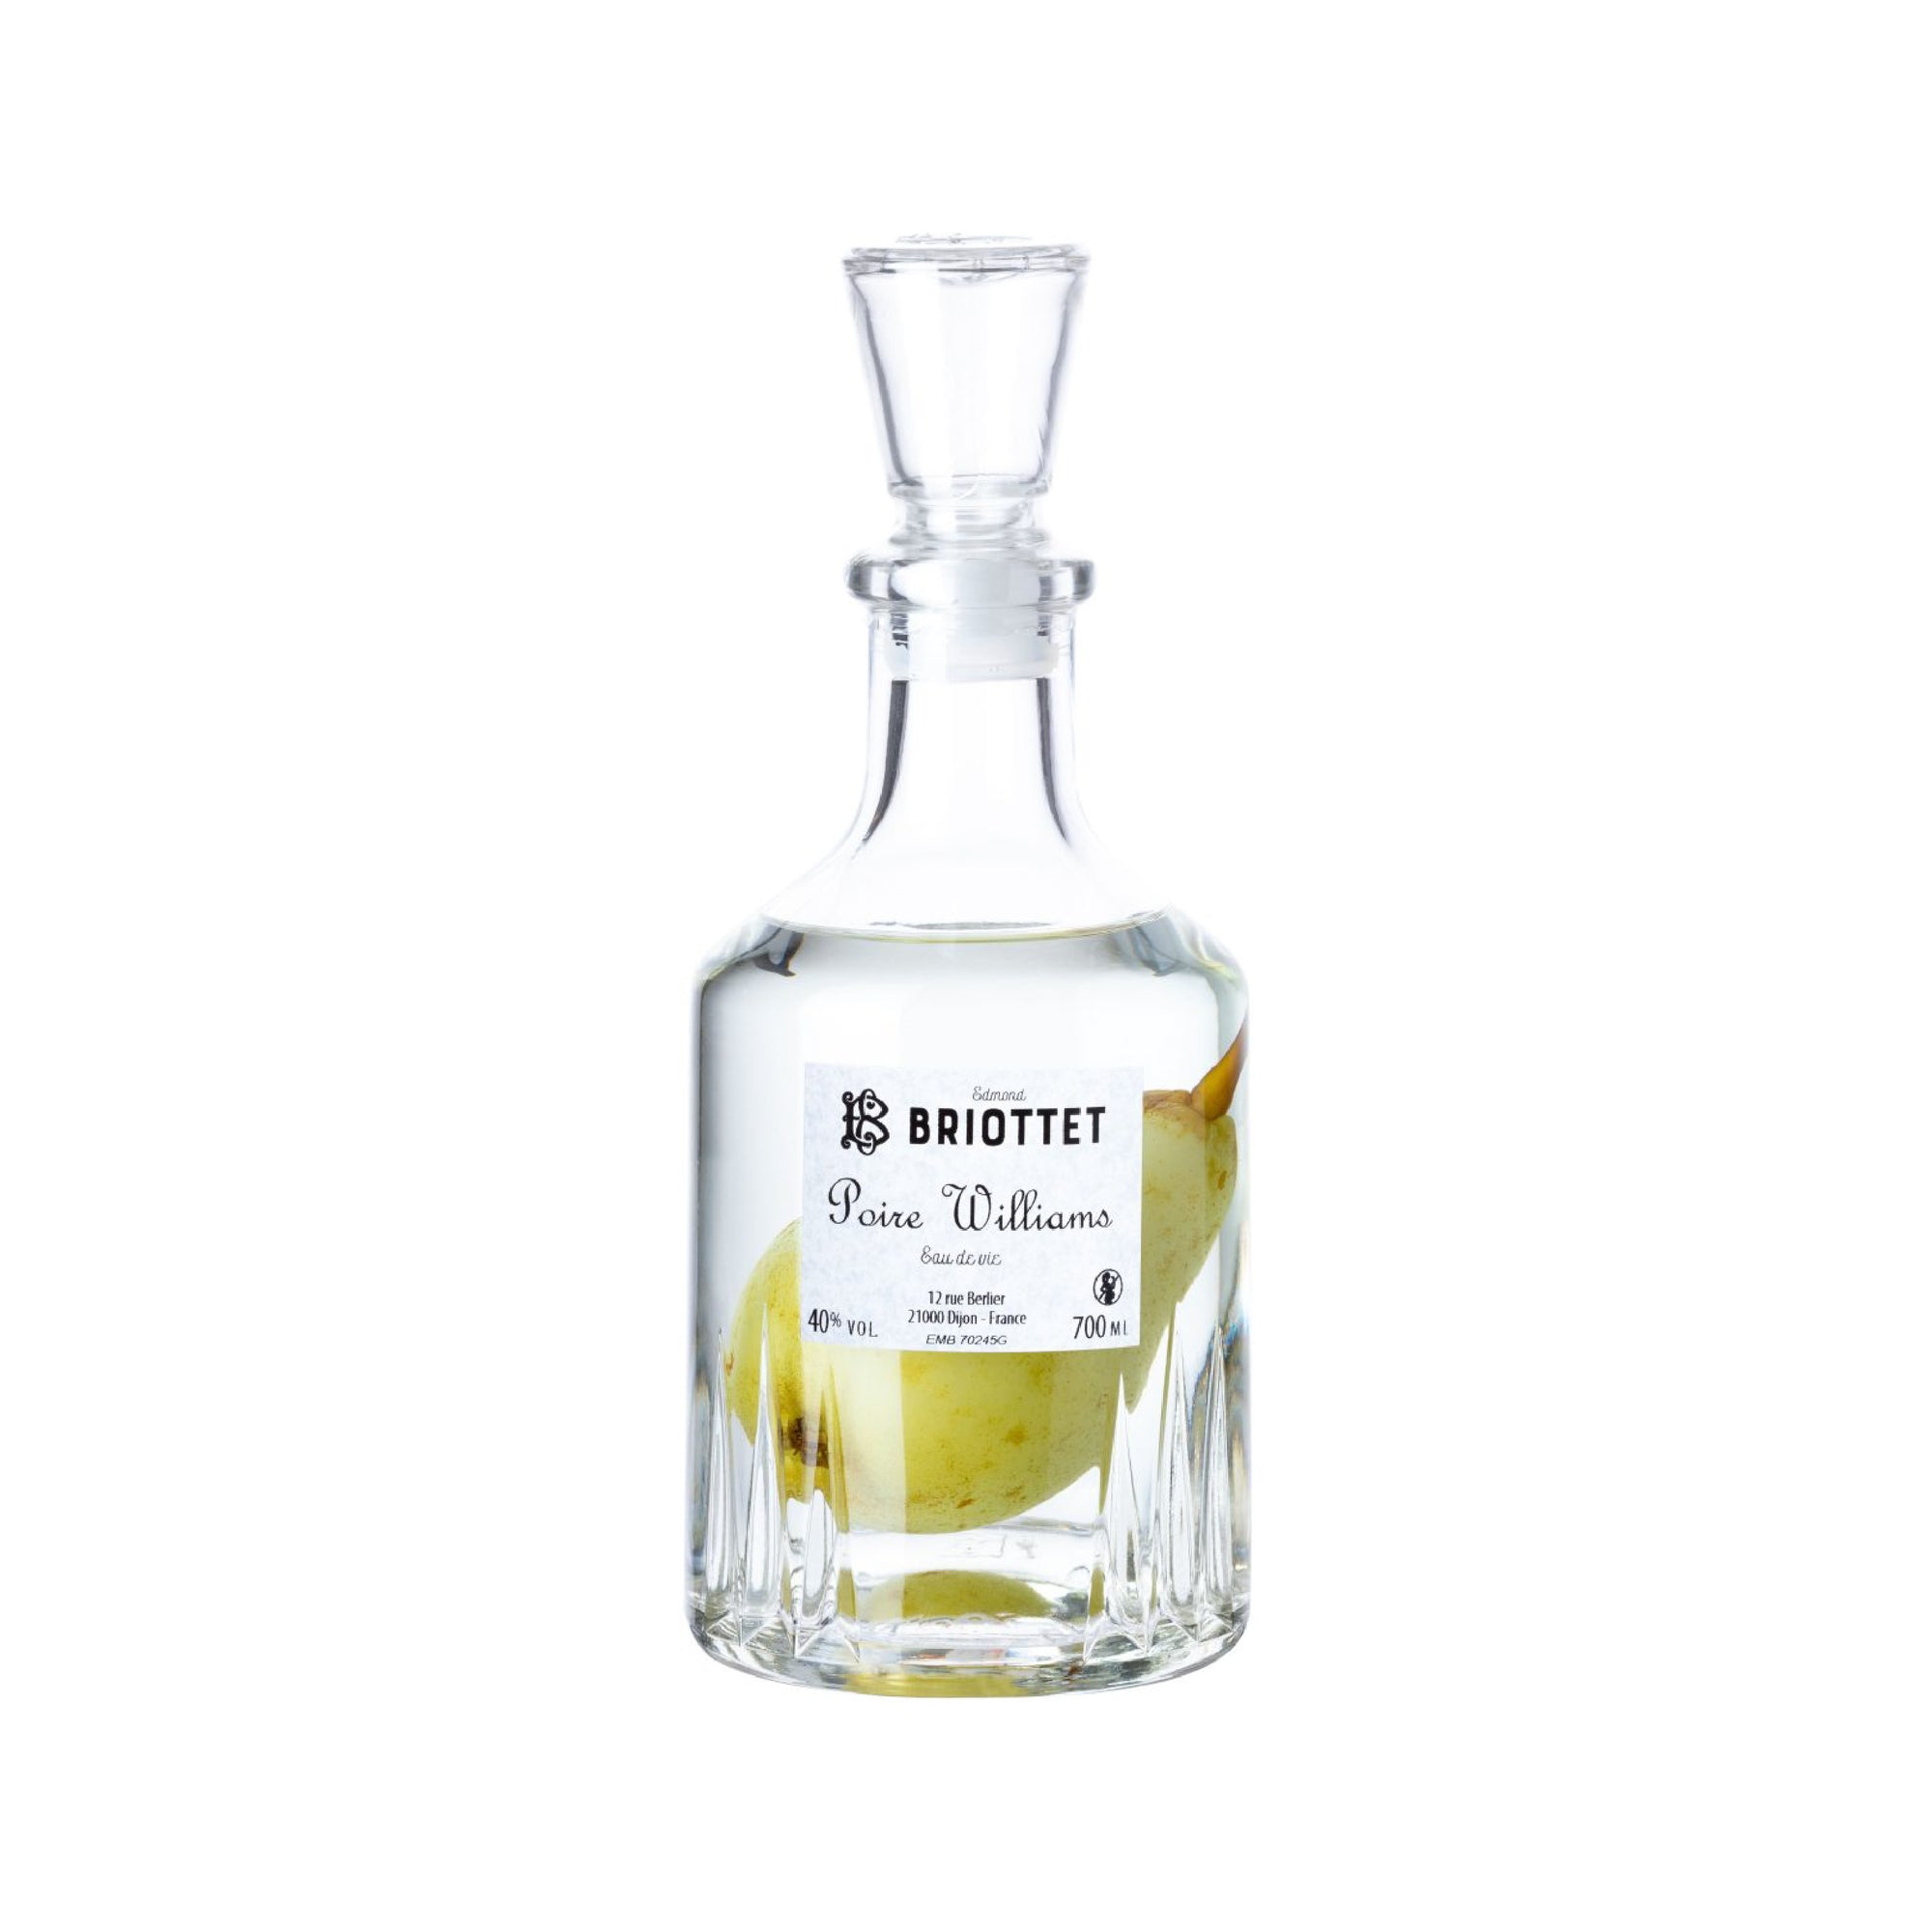 EDMOND BRIOTTET Eaux-de-Vie de Poire Emprisonnee (Pear in the bottle) - 70 cl